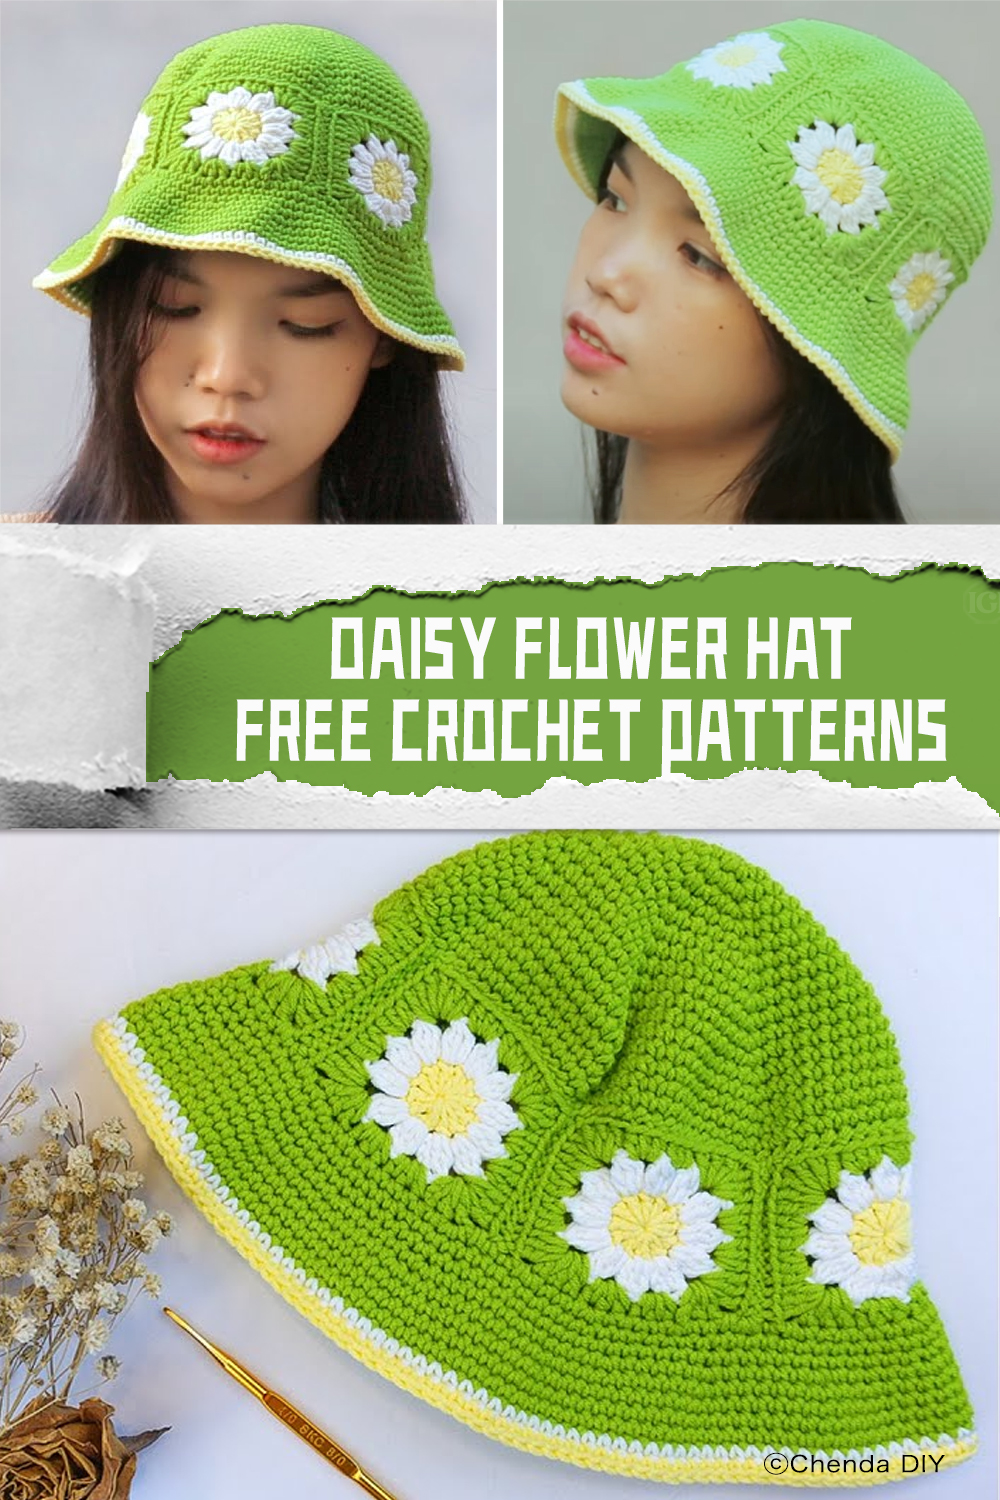 FREE Daisy Flower Hat Crochet Patterns